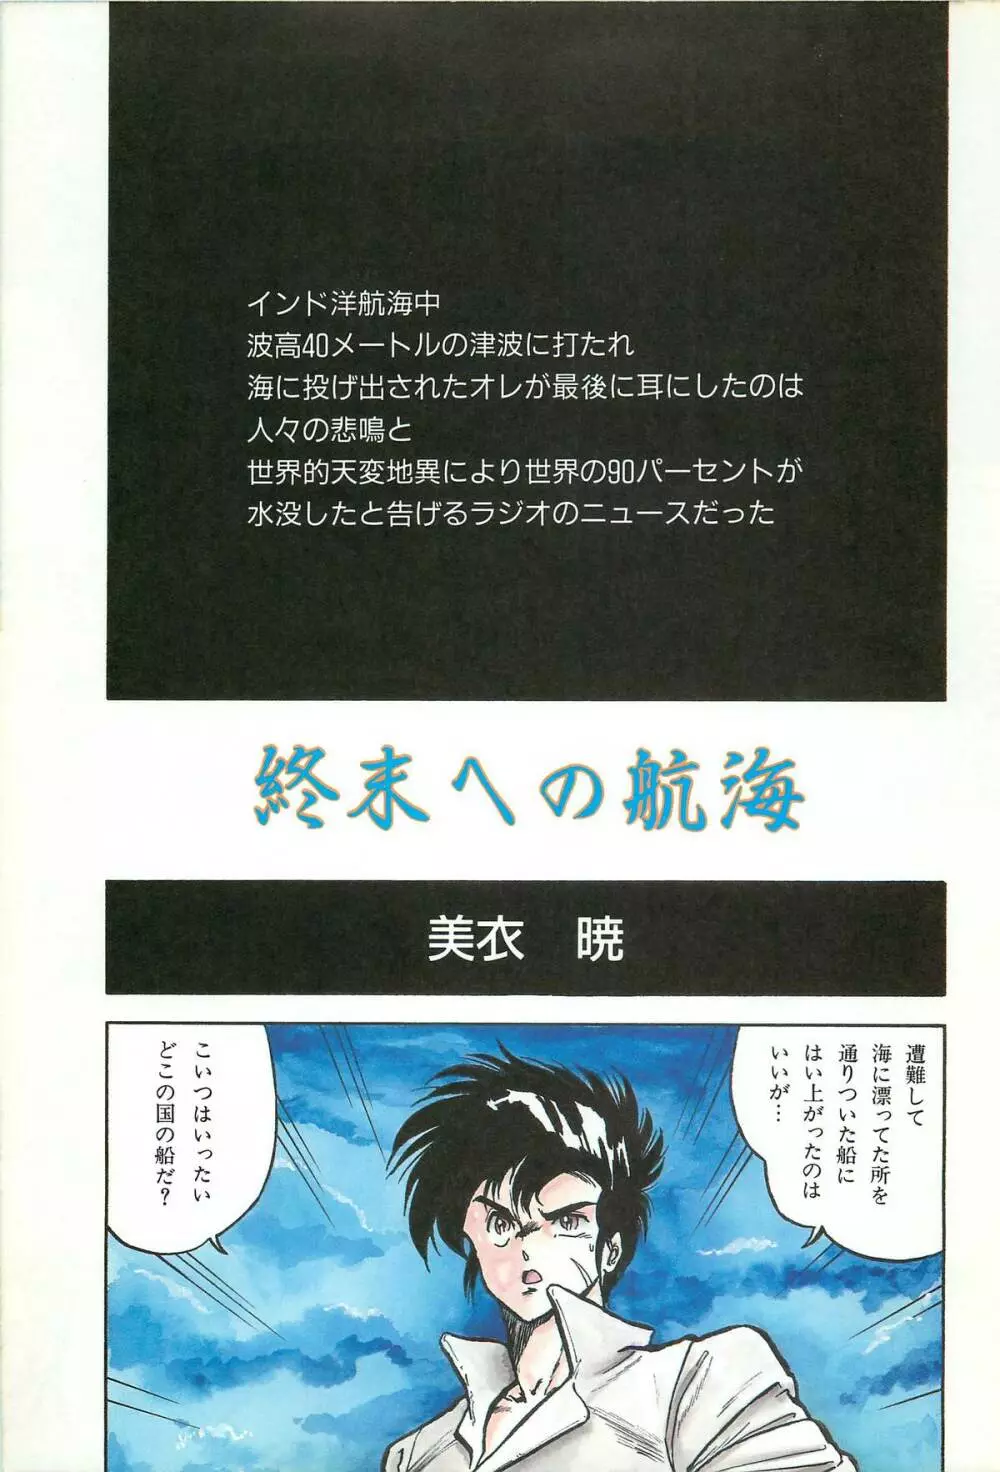 レモンピープル 1986年9月増刊号 Vol.61 オールカラー 87ページ